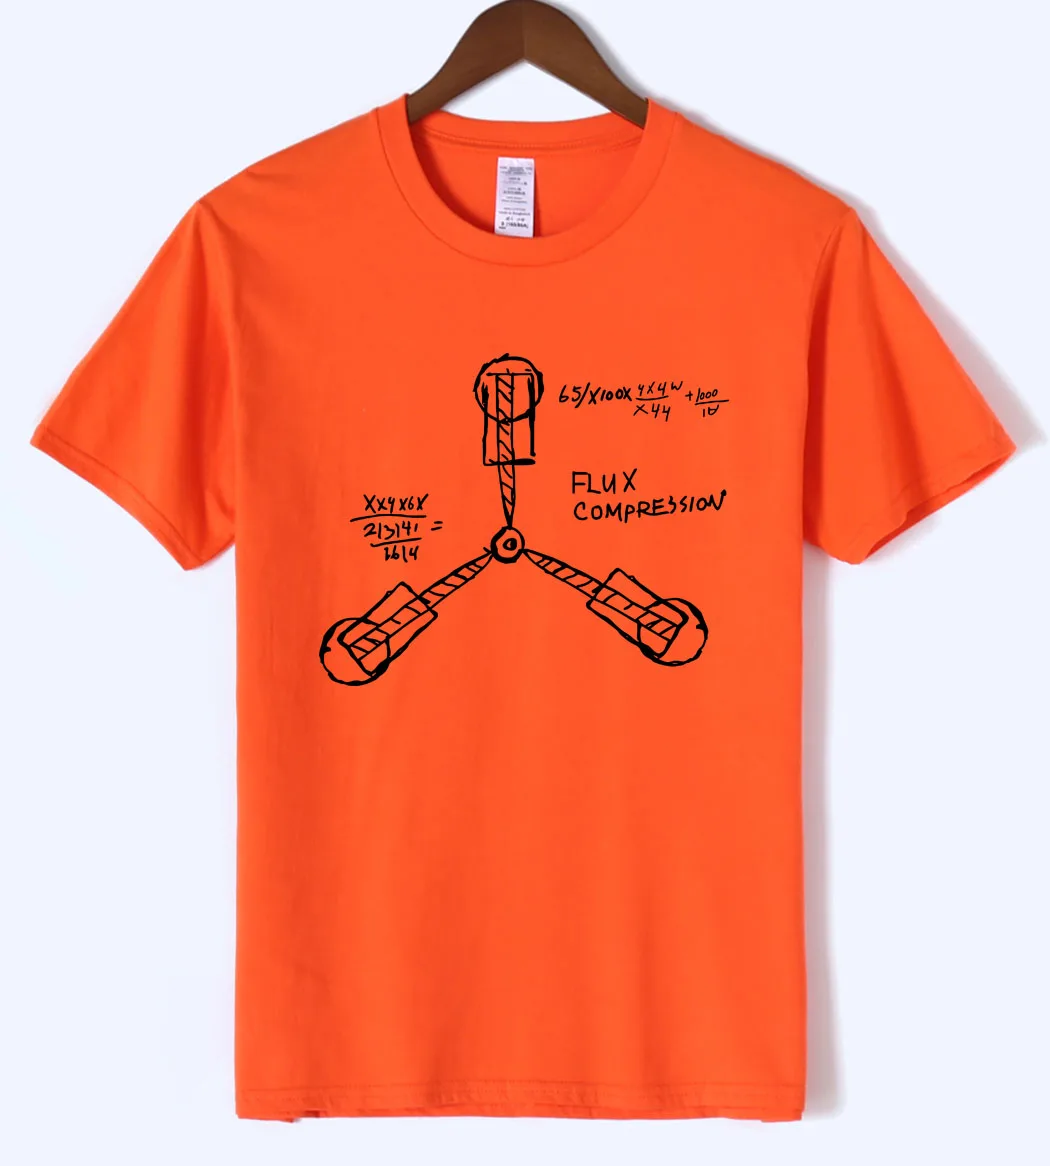 Nueva llegada de nuevo al futuro hombres camiseta 2018 Ciencia de verano divertida camiseta de los hombres 100% de algodón de alta calidad Camiseta de manga corta